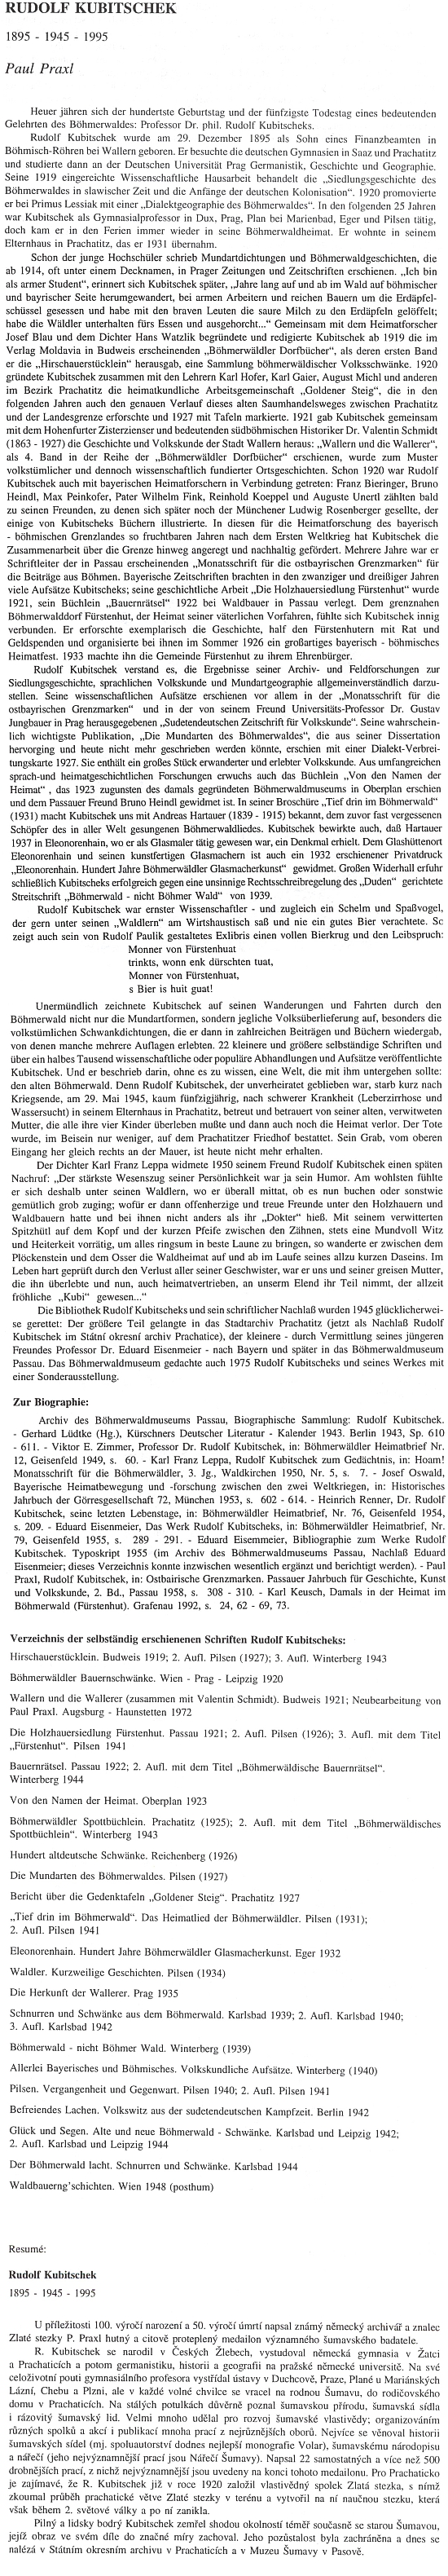 Zasvěcený text Paula Praxla ve sborníku Prachatického muzea je doprovázen i seznamem samostatně vydaných Kubitschekových prací a českým resumé